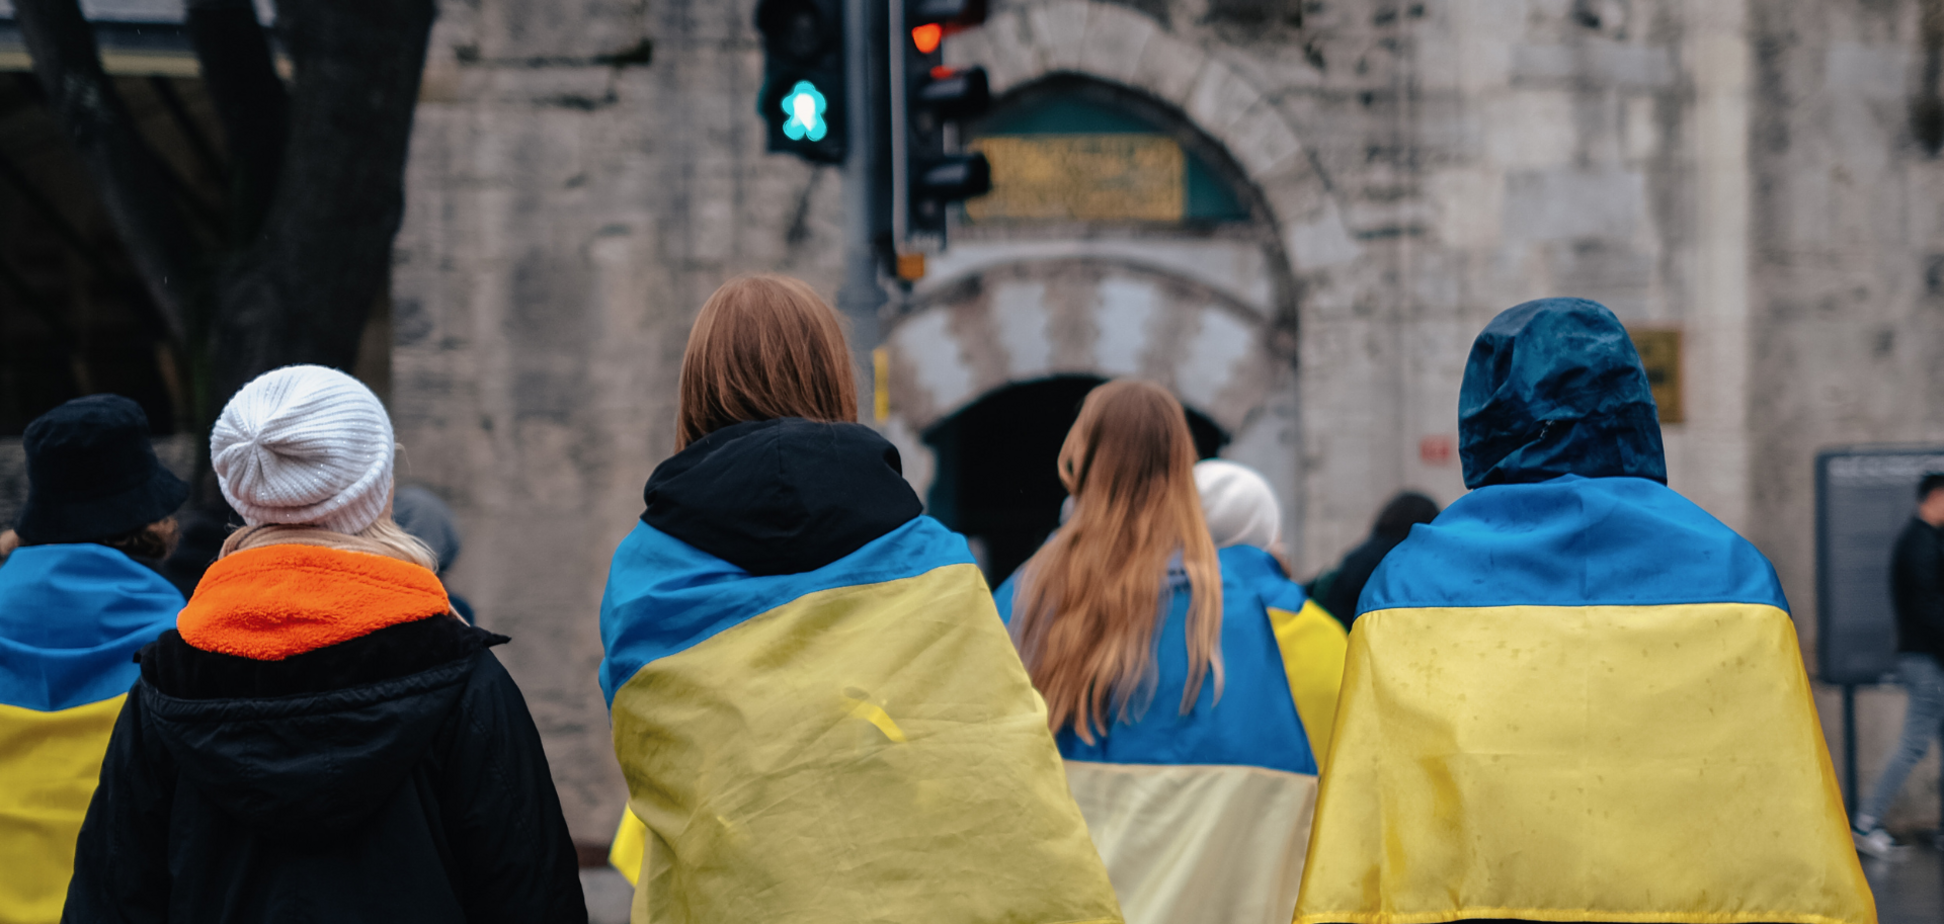 Мнения разделились: опрос показал, как изменилось отношение чехов к беженцам из Украины